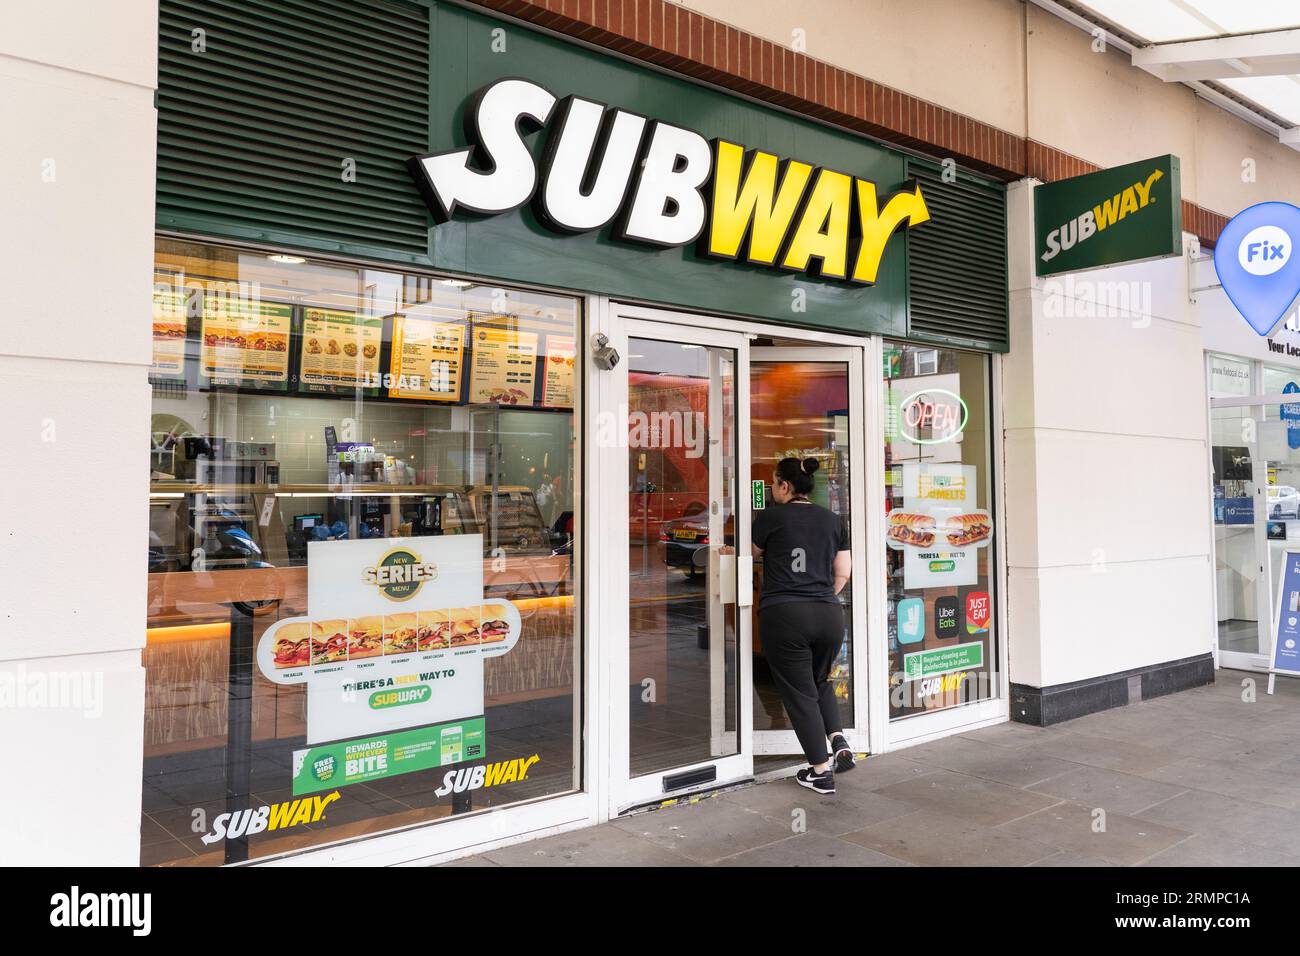 Eine Frau, die in einem U-Bahn-Restaurant zum Mitnehmen in Chelsea, London, Großbritannien, spaziert. Subway ist ein amerikanisches Fast-Food-Restaurant Stockfoto